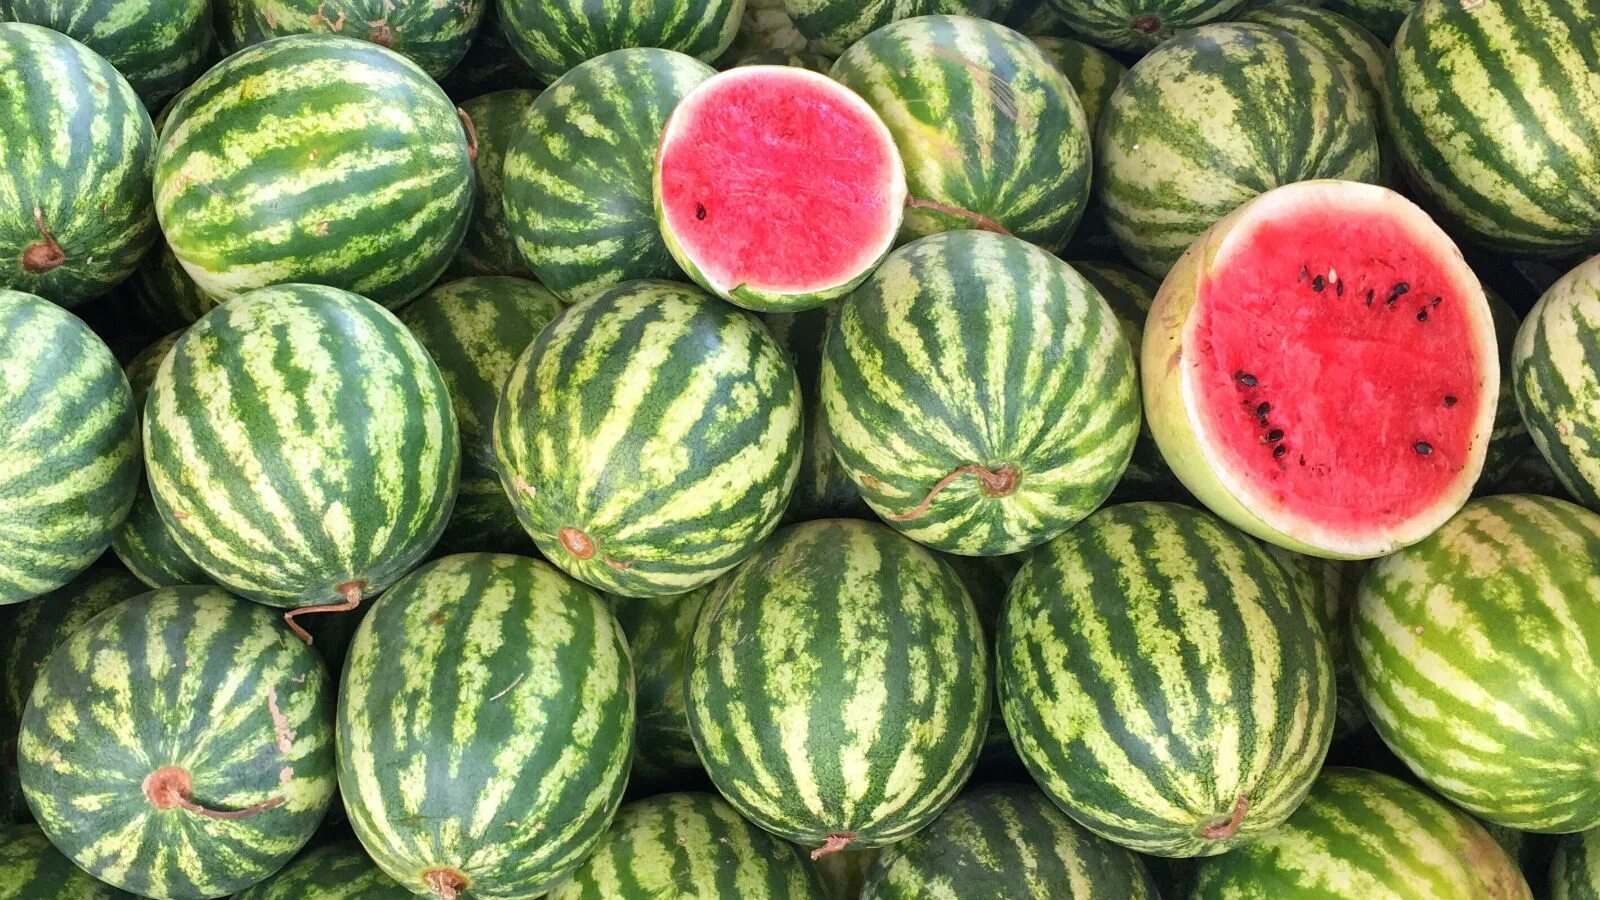 Сорт сладкого арбуза. Туркменистан,дыни, бахчи. Арбуз super Luxe Watermelon. Сорт арбуза Дайтона.